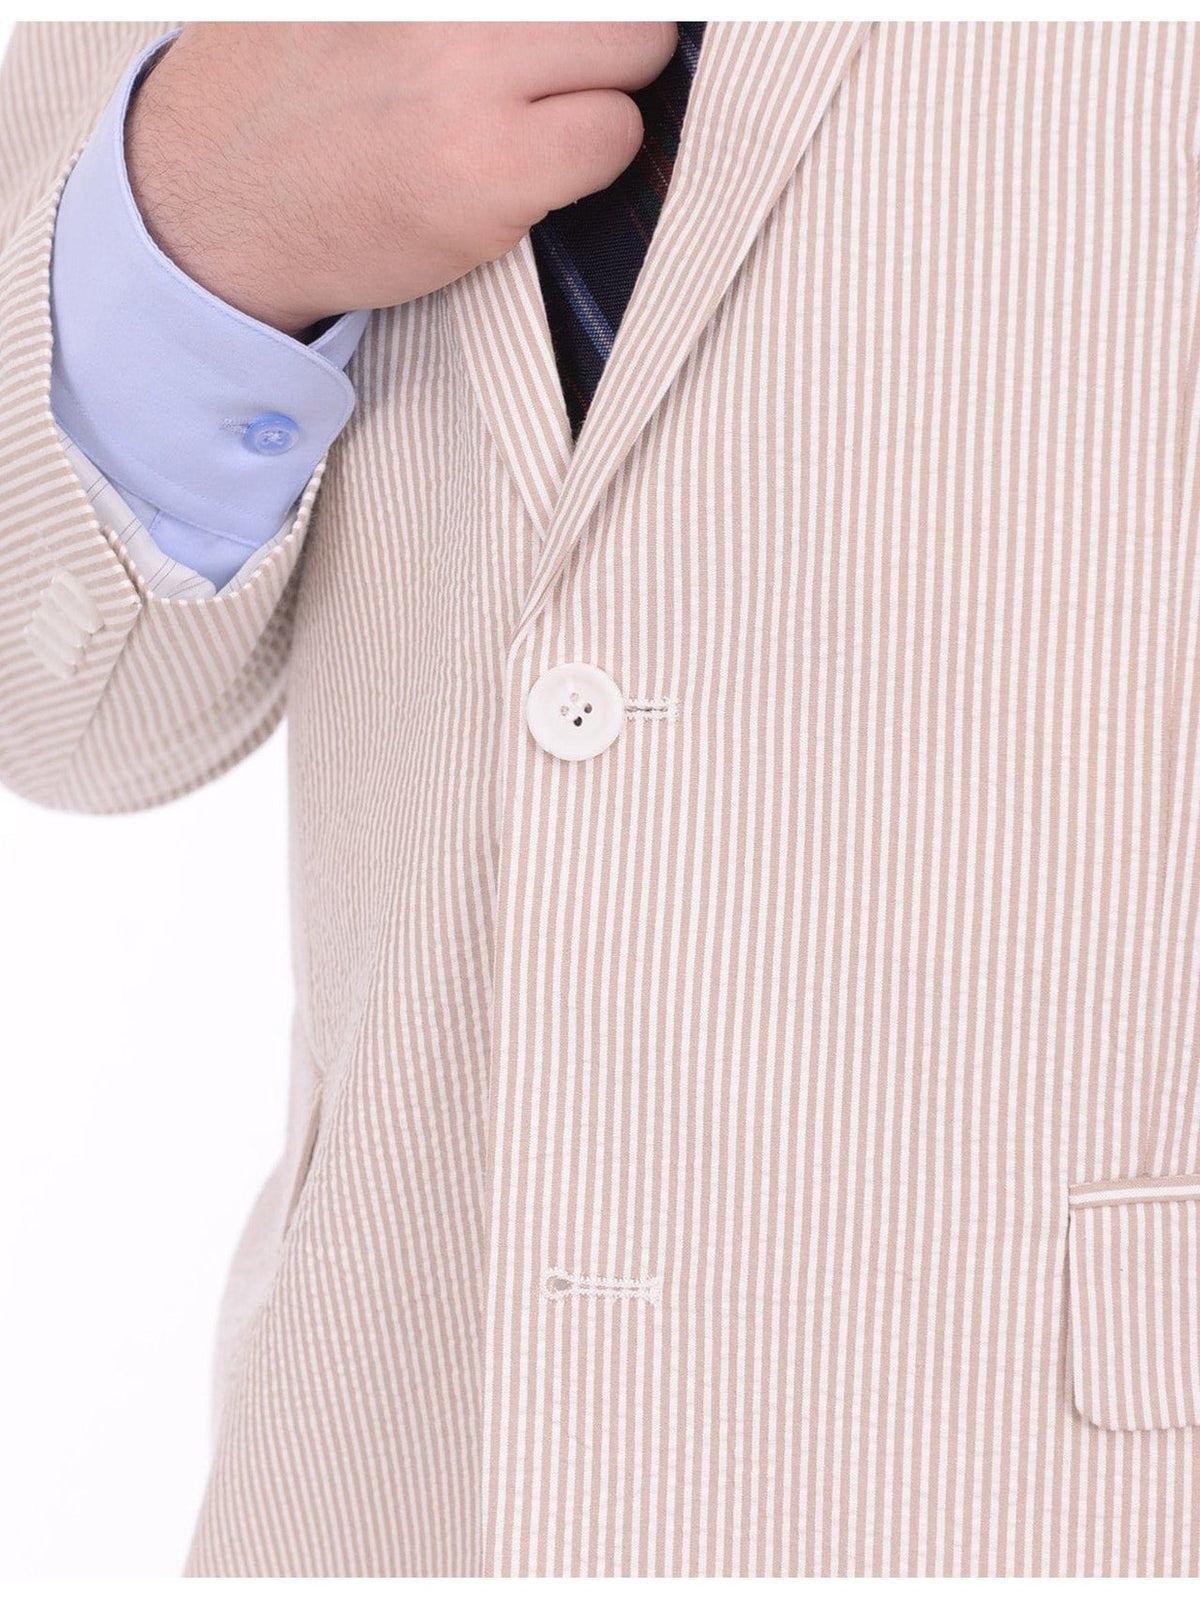 Emigre BLAZERS Emigre Classic Fit Tan Pinstriped Two Button Cotton Seersucker Blazer